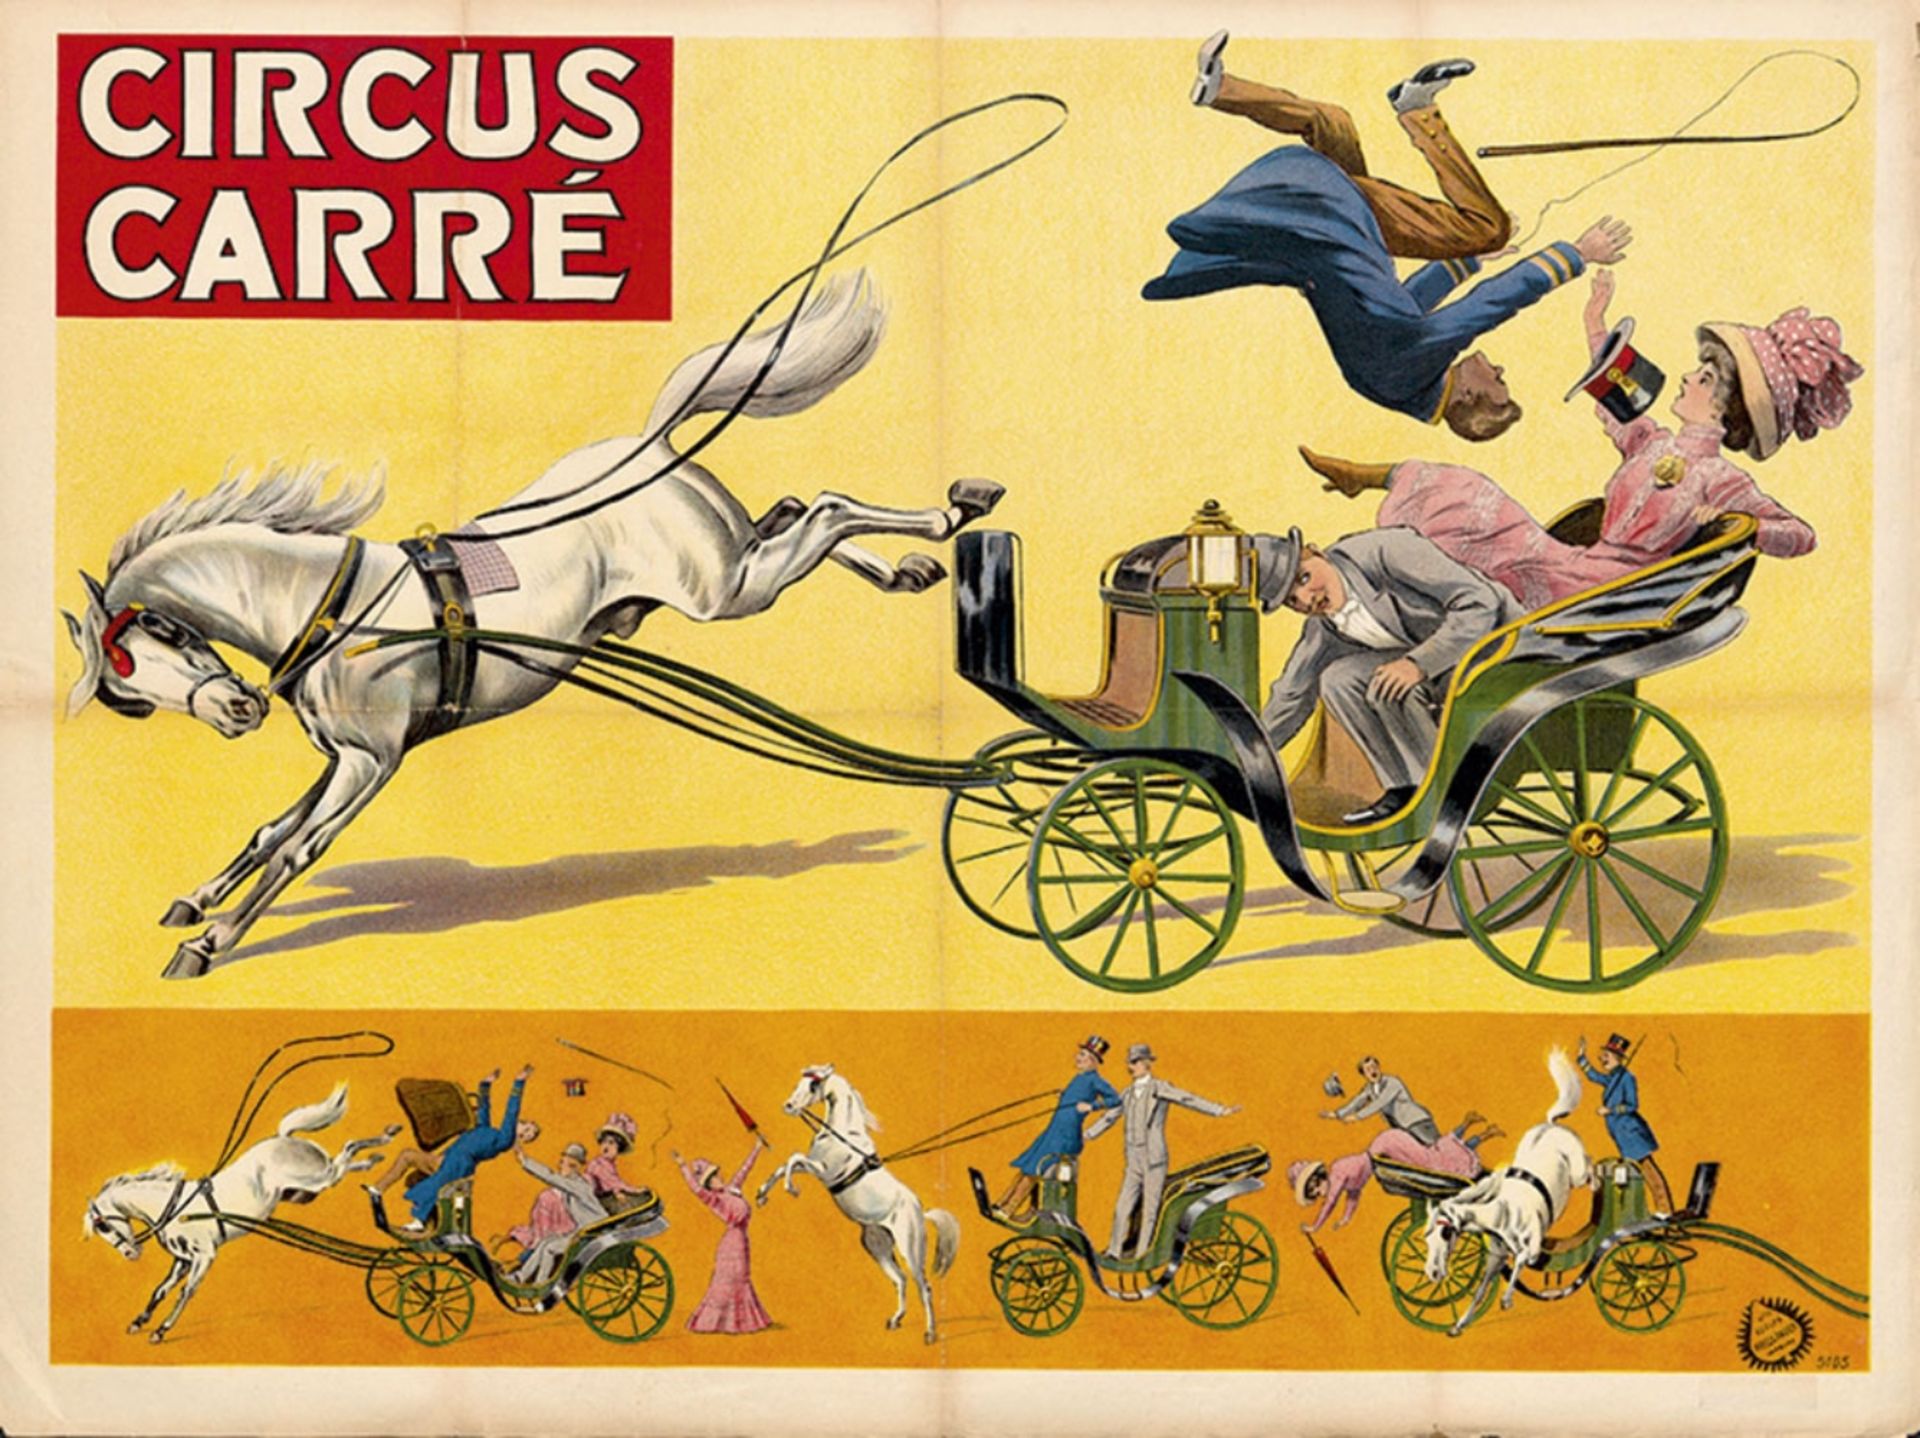 [Comedy] Circus Carré